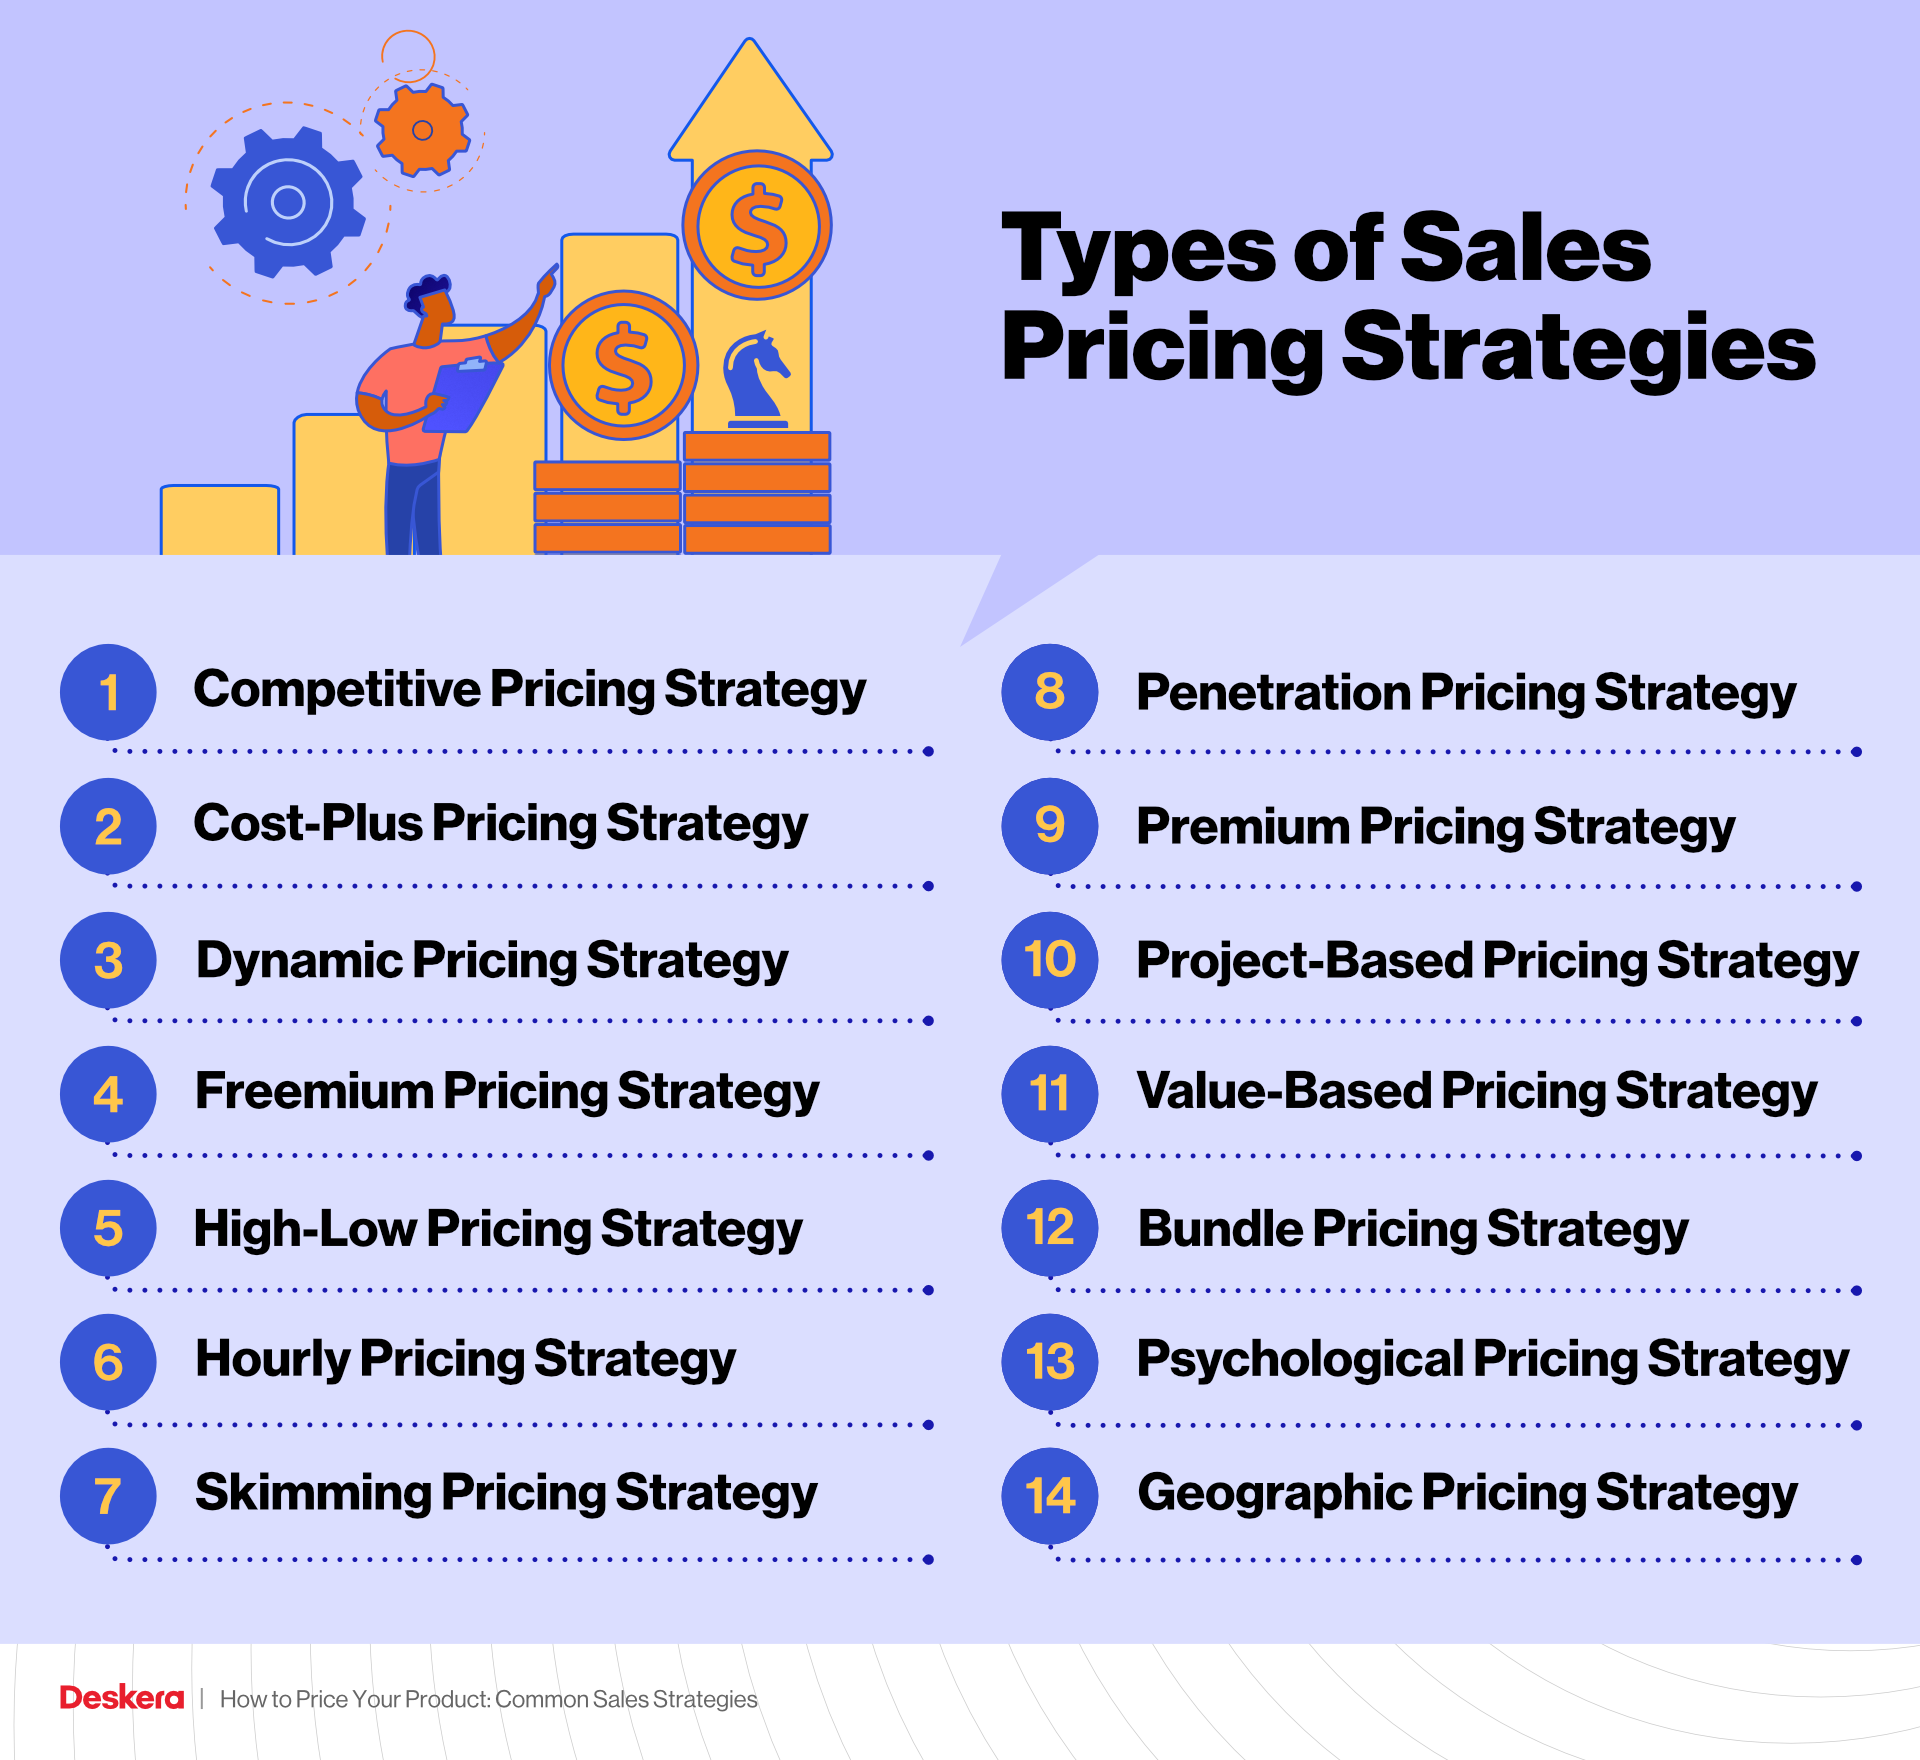 Types of Sales Pricing Strategies